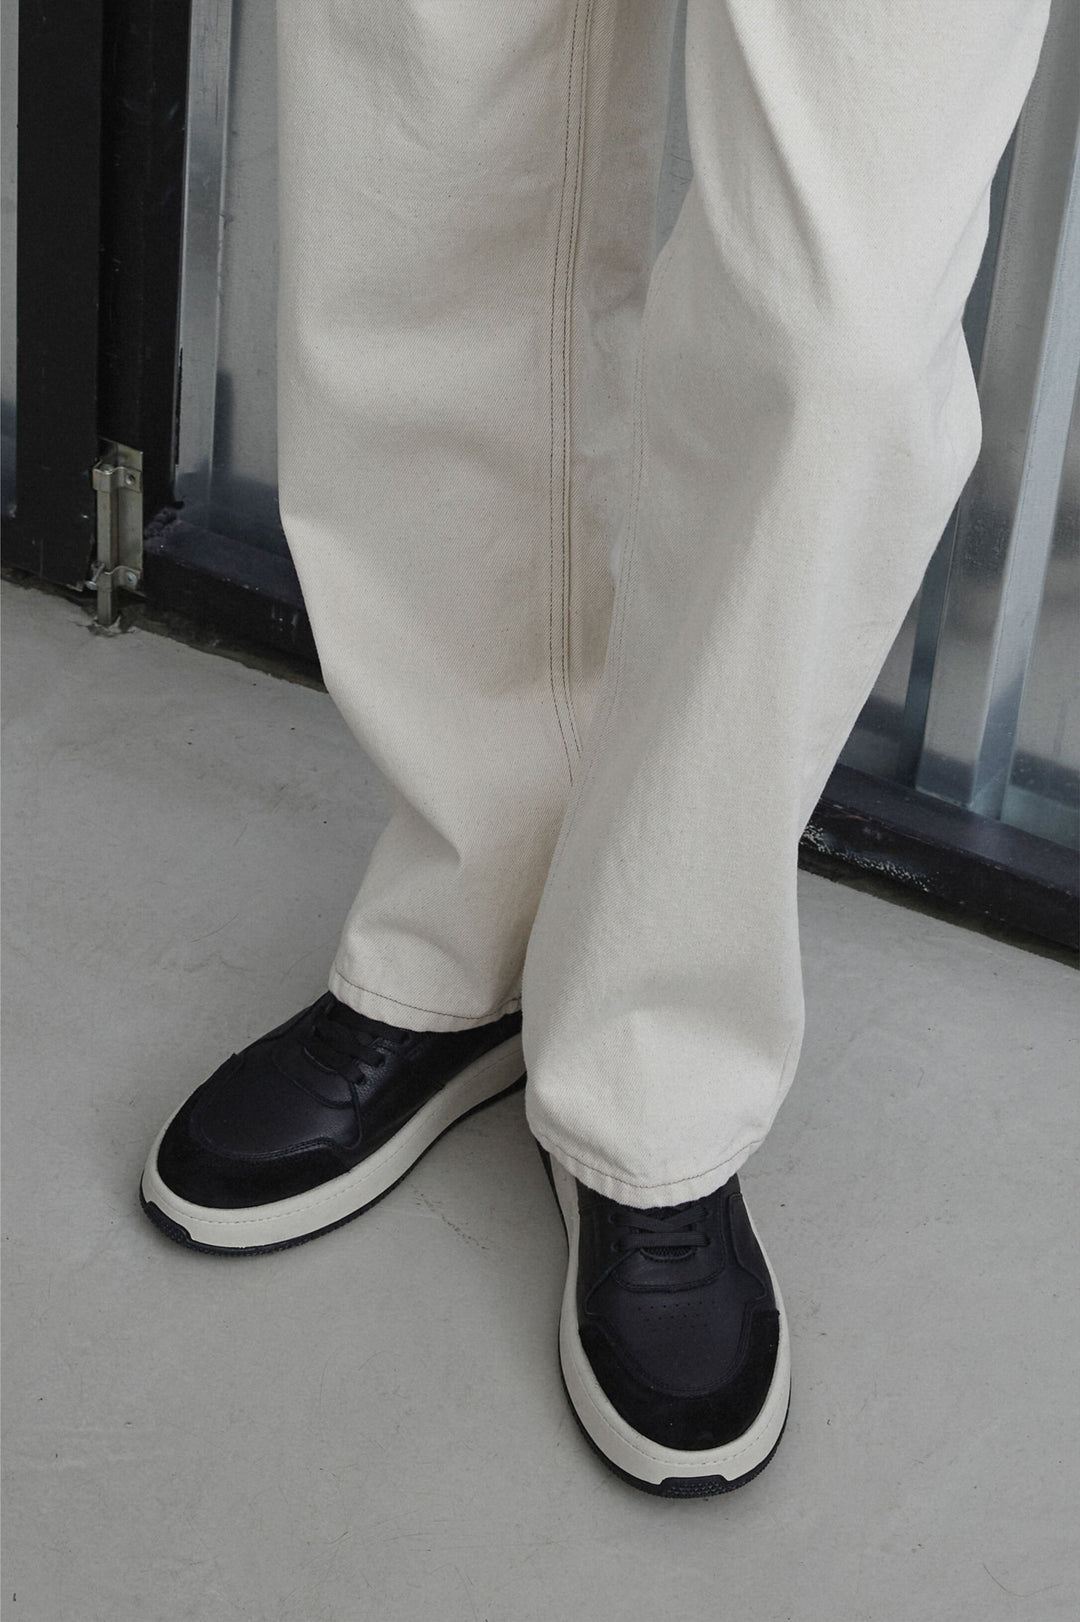 Men's low-top black sneakers - fully-stylized model.